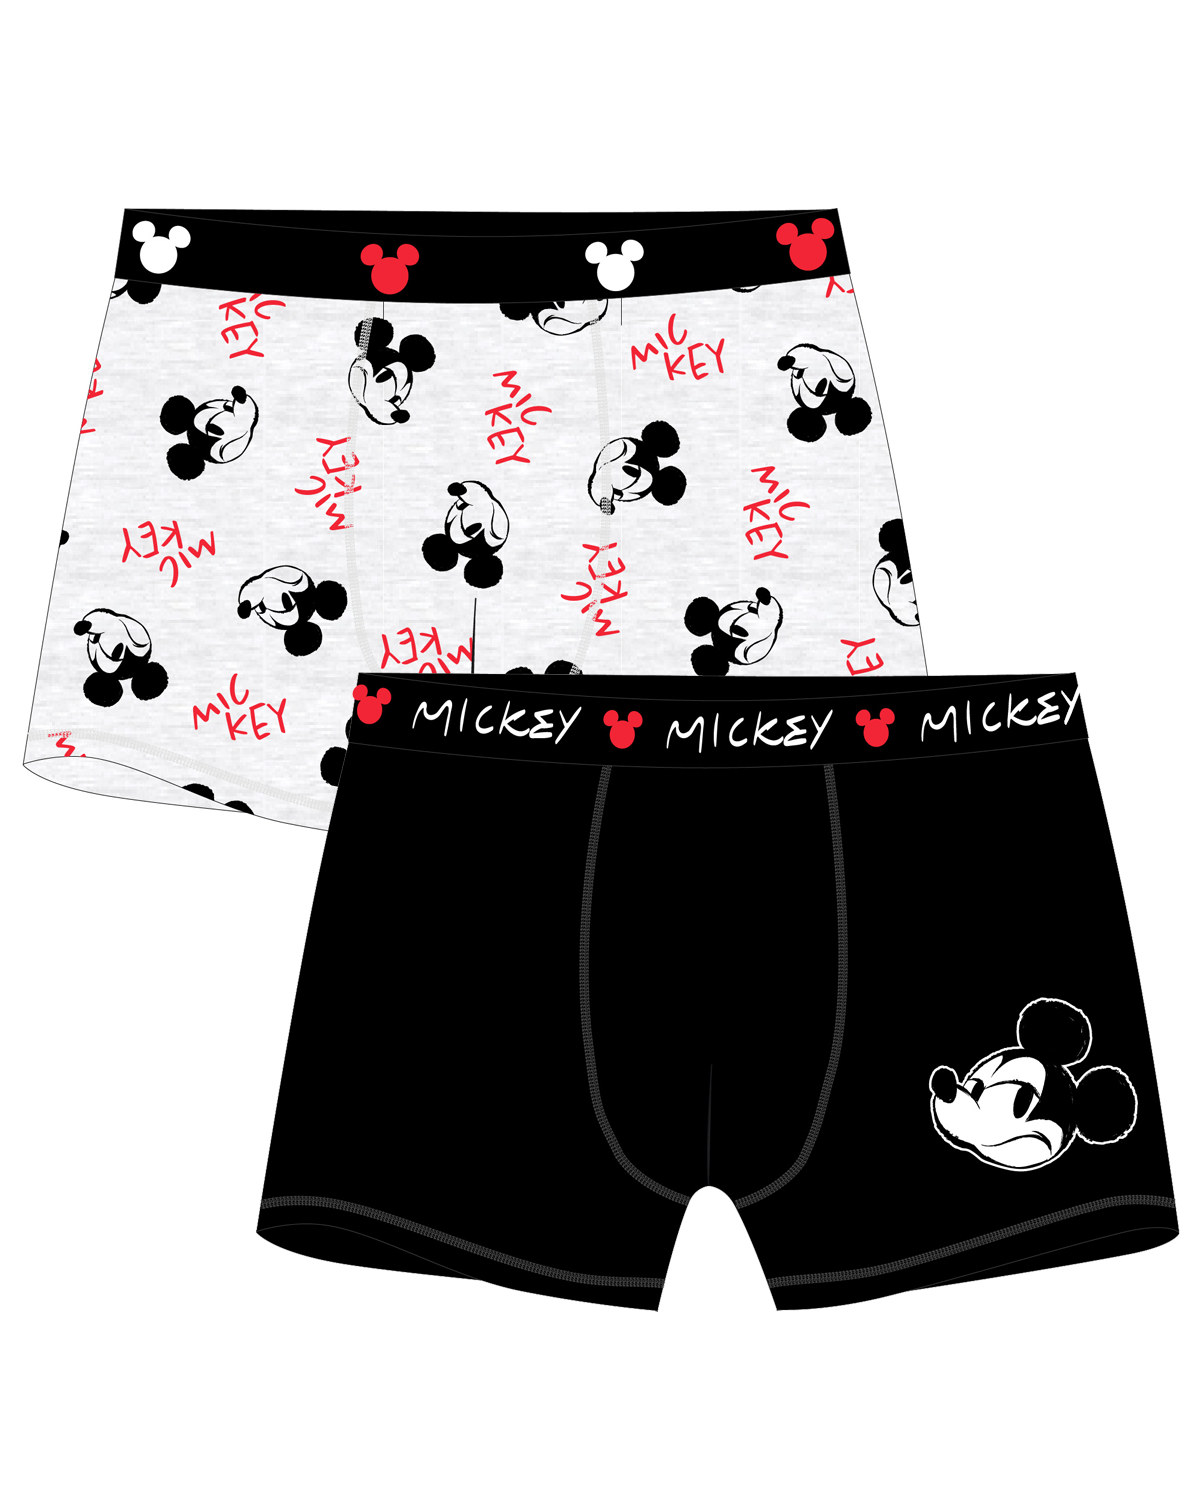 Mickey Mouse - licence Pánské boxerky - Mickey Mouse 5333C143, černá / šedý melír Barva: Mix barev, Velikost: S